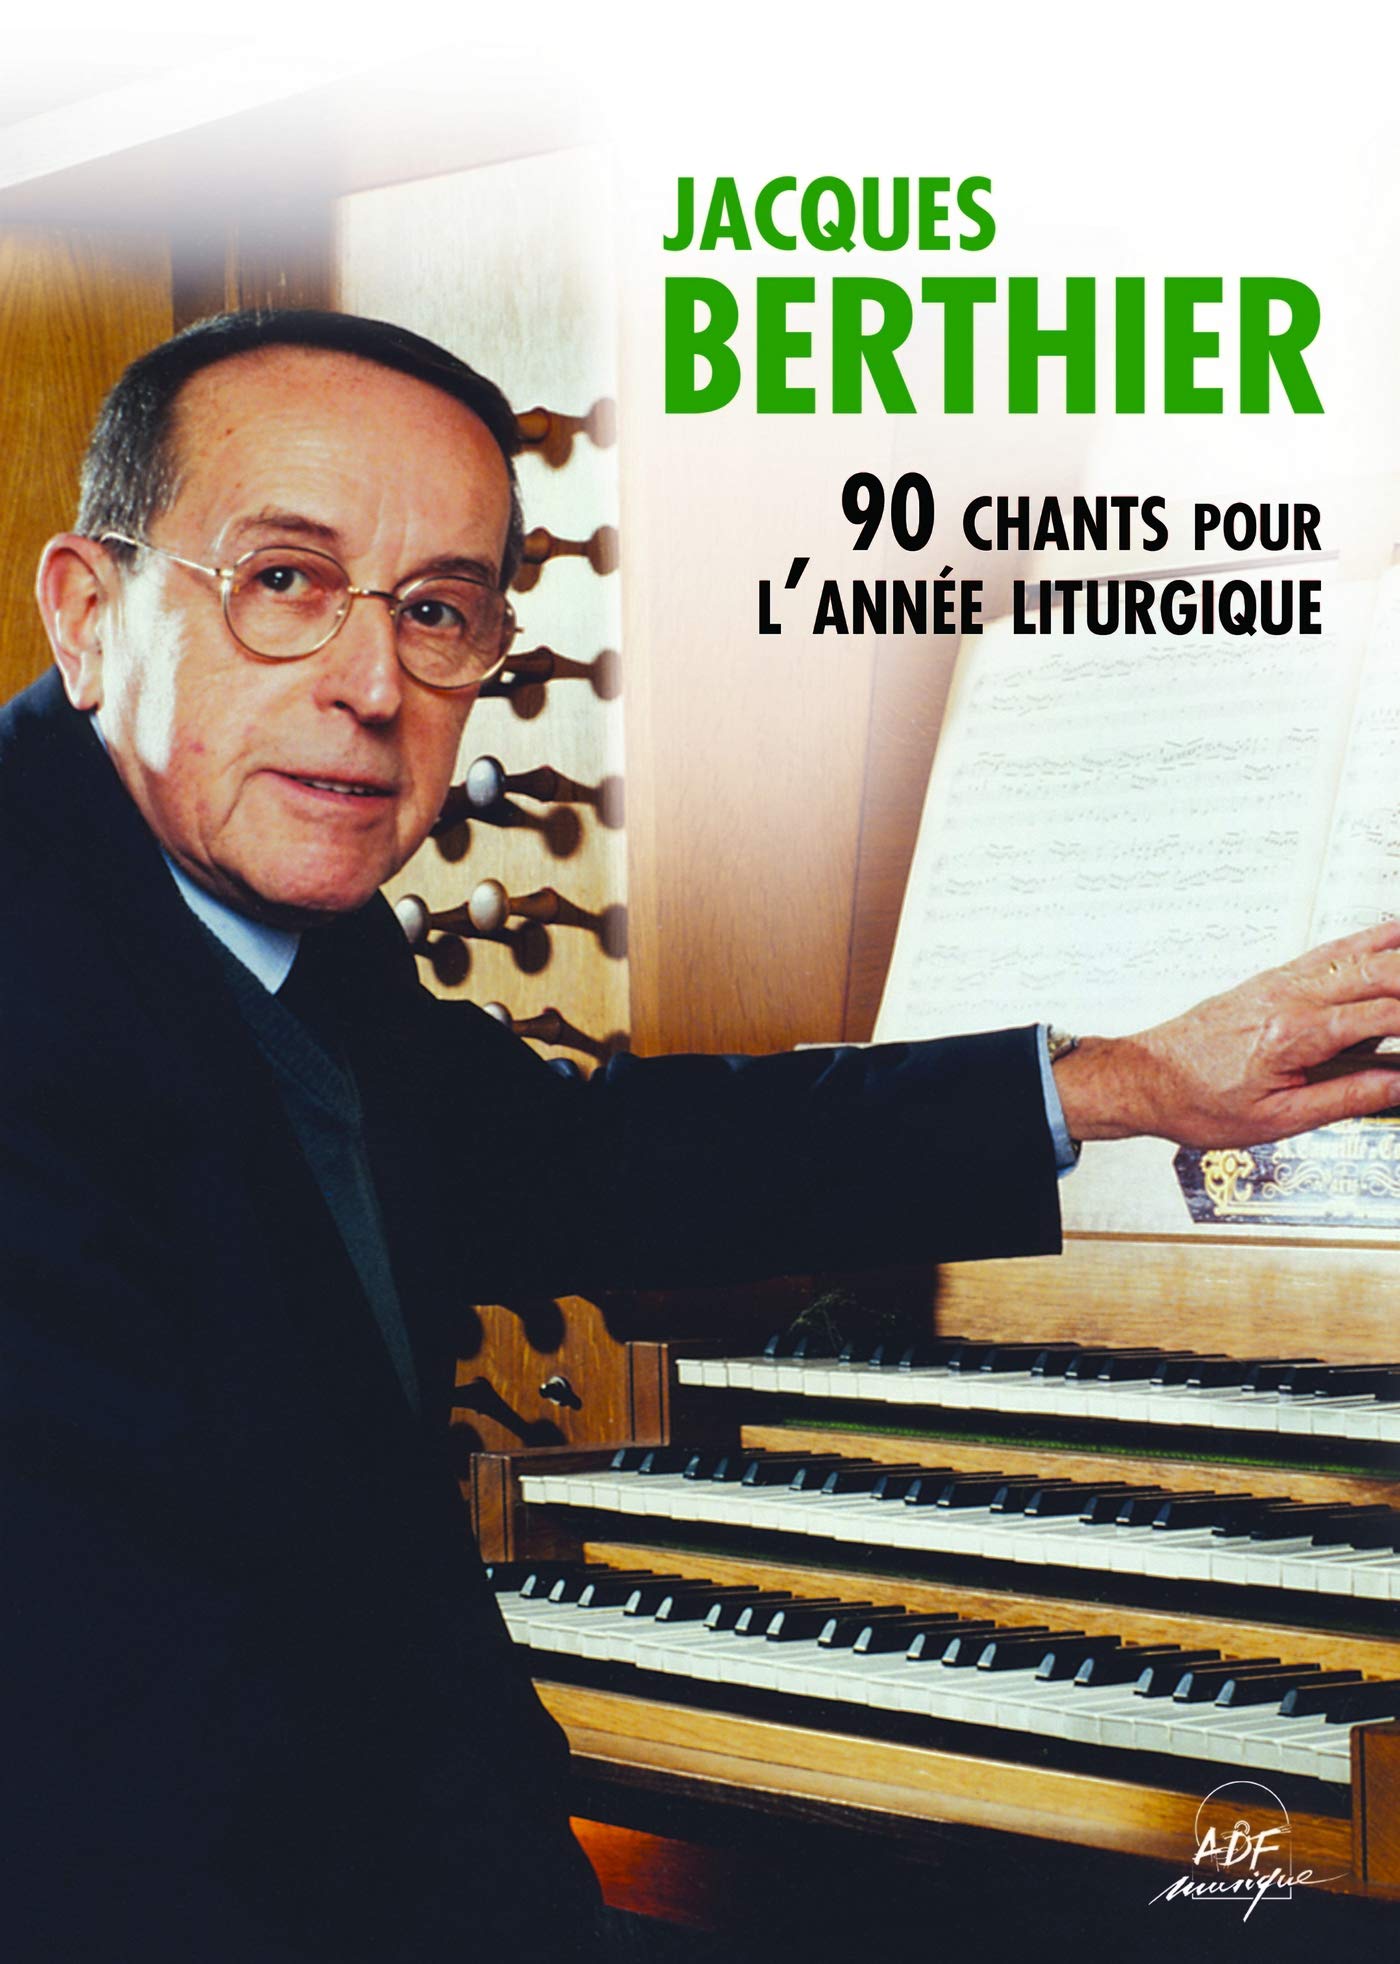 Libri Berthier Jacques - Jacques Berthier - 90 Chants Pour L'Annee Liturgique NUOVO SIGILLATO, EDIZIONE DEL 01/07/2015 SUBITO DISPONIBILE